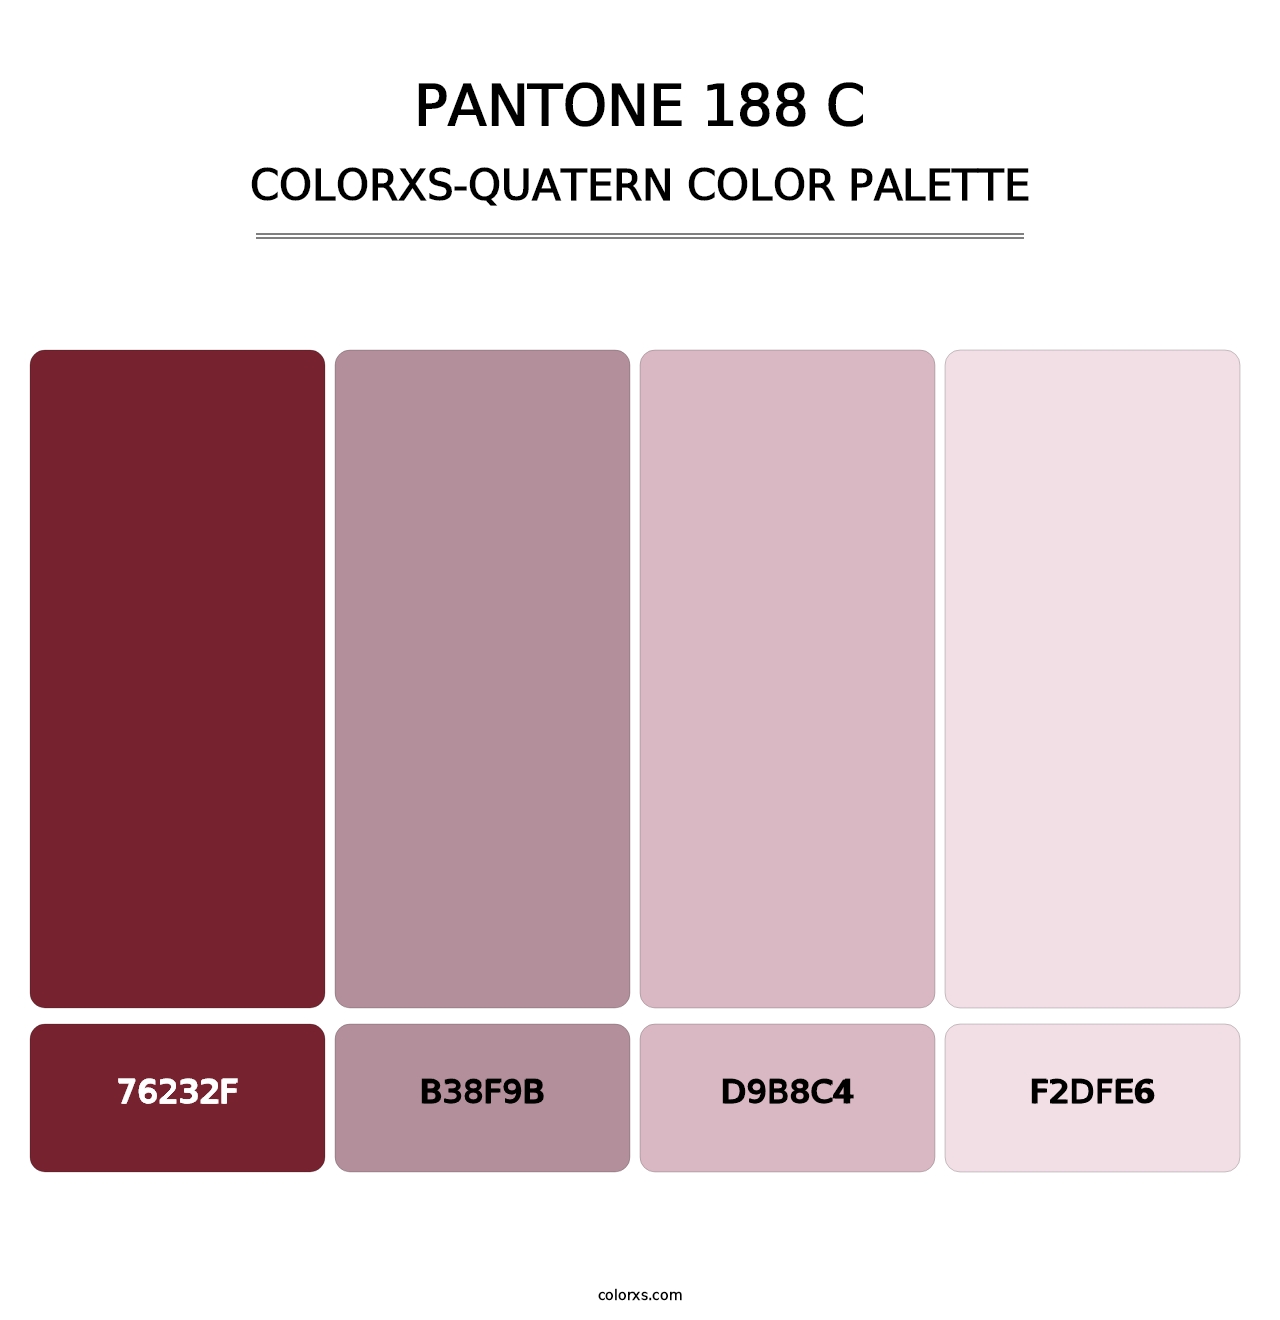 PANTONE 188 C - Colorxs Quatern Palette